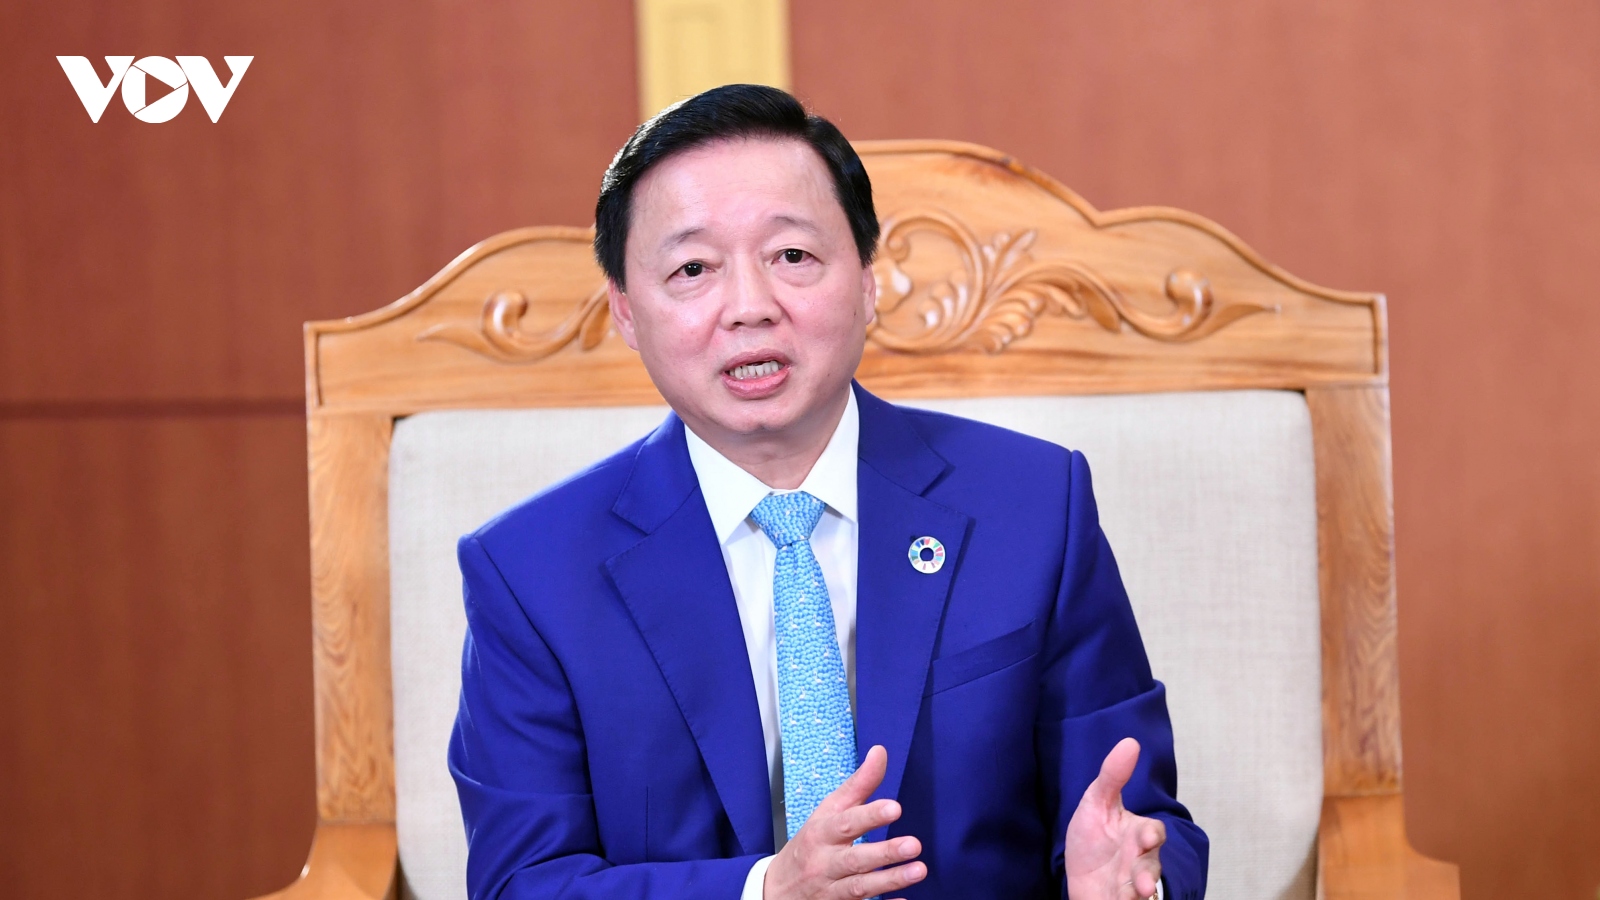 Bộ trưởng Trần Hồng Hà: “Trồng cây để sửa chữa những sai lầm của con người với tự nhiên"